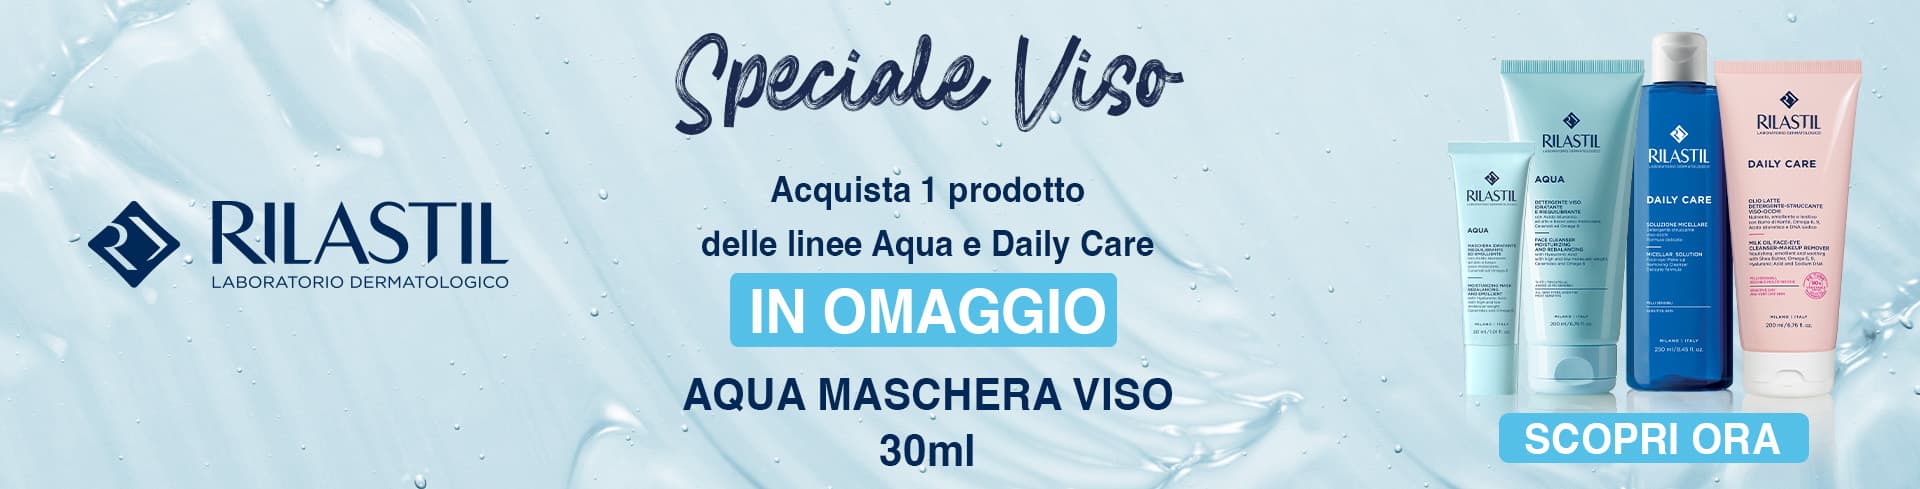 banner promozionale rilastil aqua e daily care: acquista 1 prodotto, ricevi in omaggio aqua maschera viso 30ml  desktop